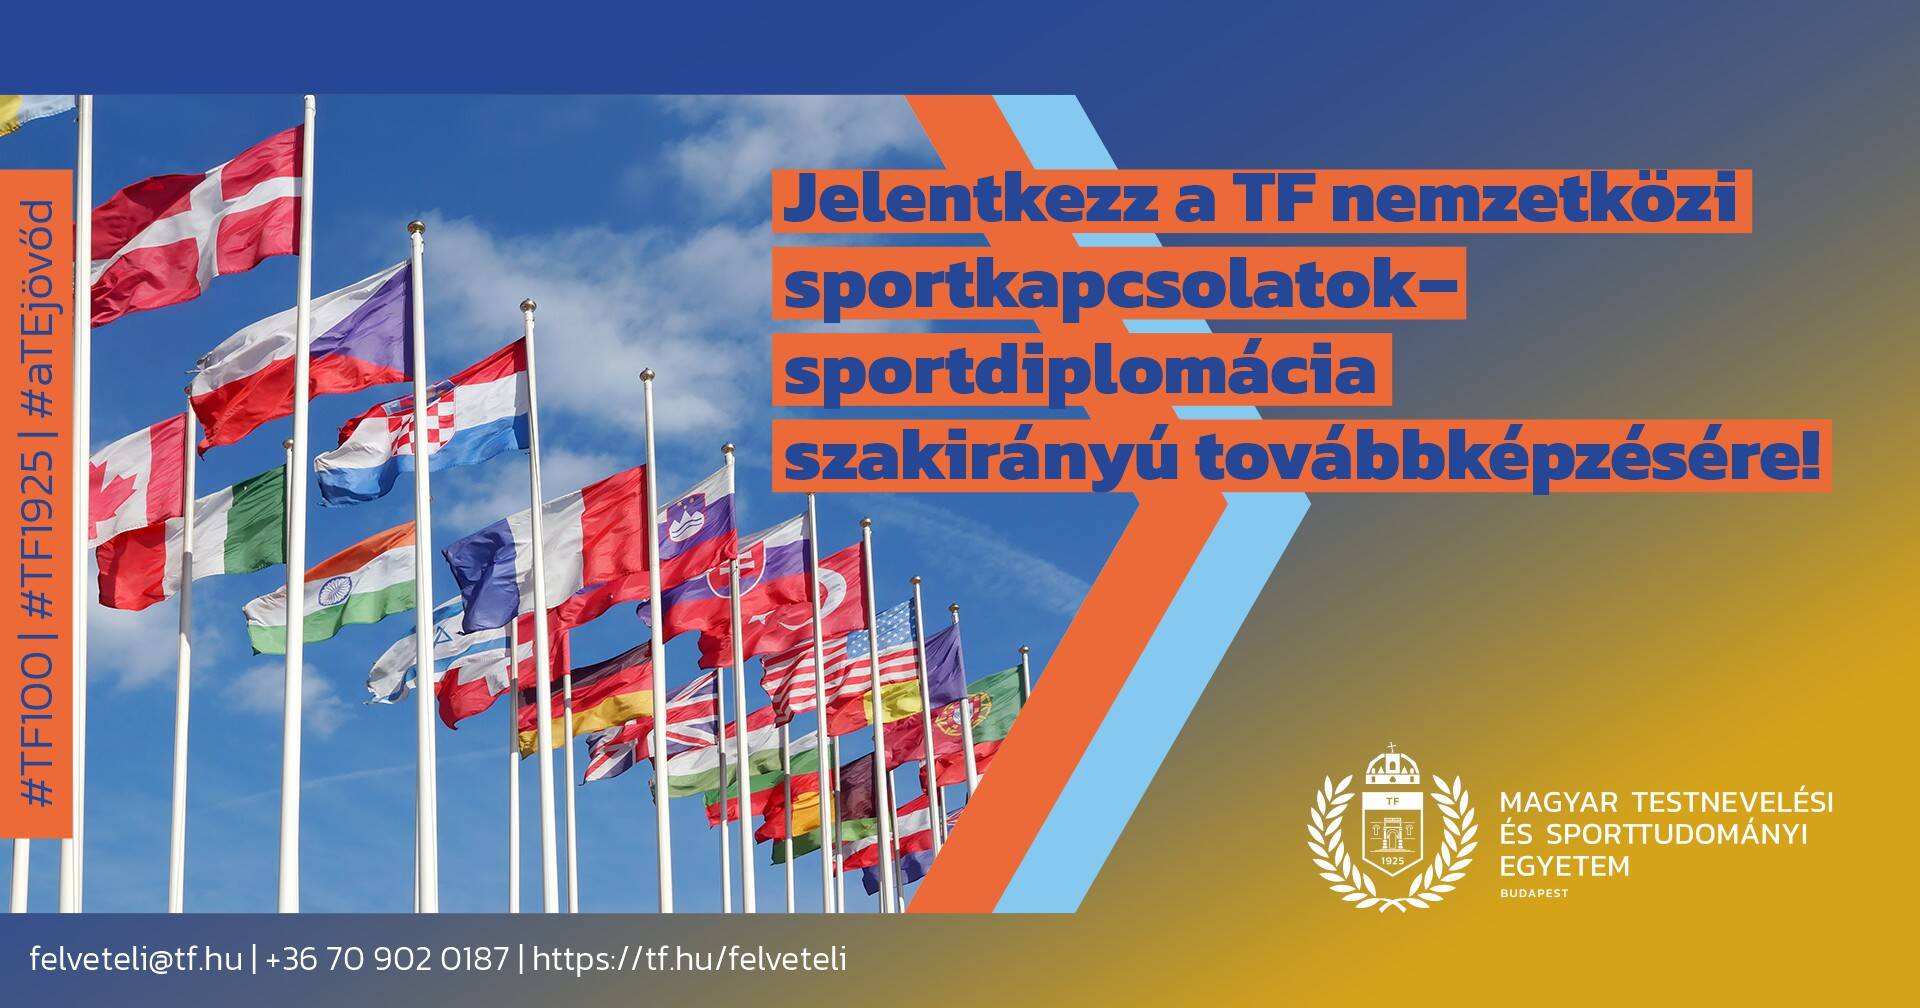 Augusztus 31-ig jelentkezhetünk a Nemzetközi Sportkapcsolatok - Sportdiplomácia képzésre